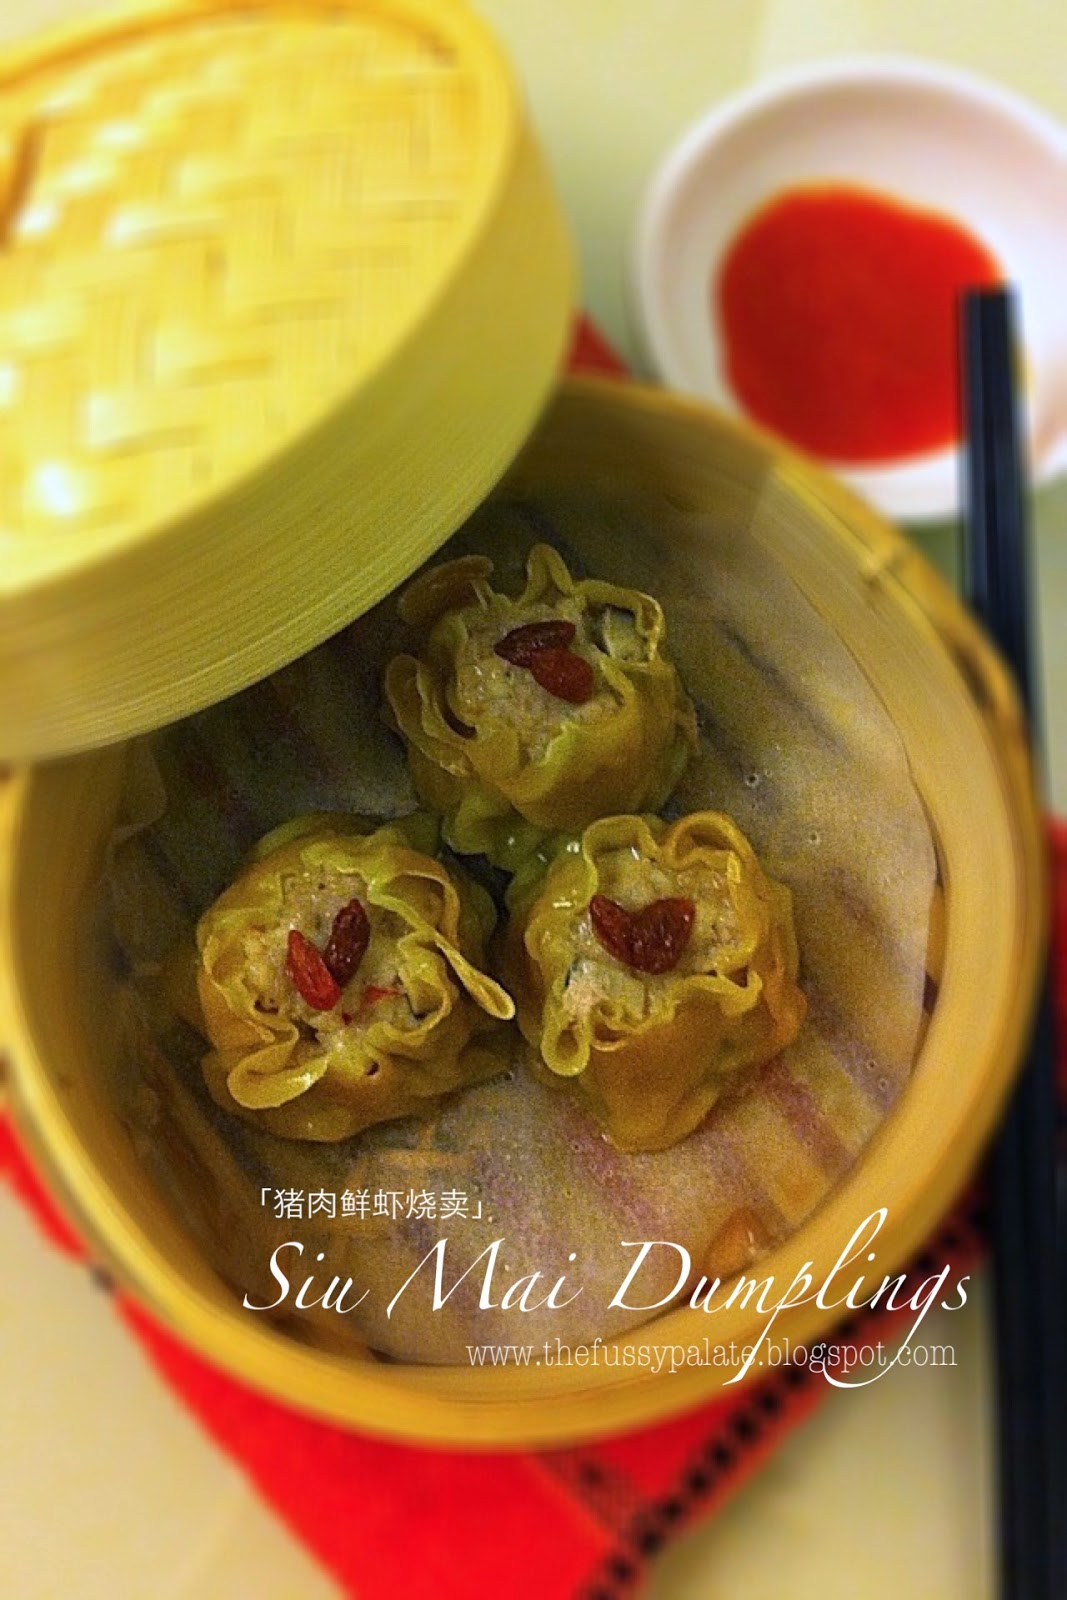 The Fussy Palate: Pork & Shrimp Siu Mai Dumplings